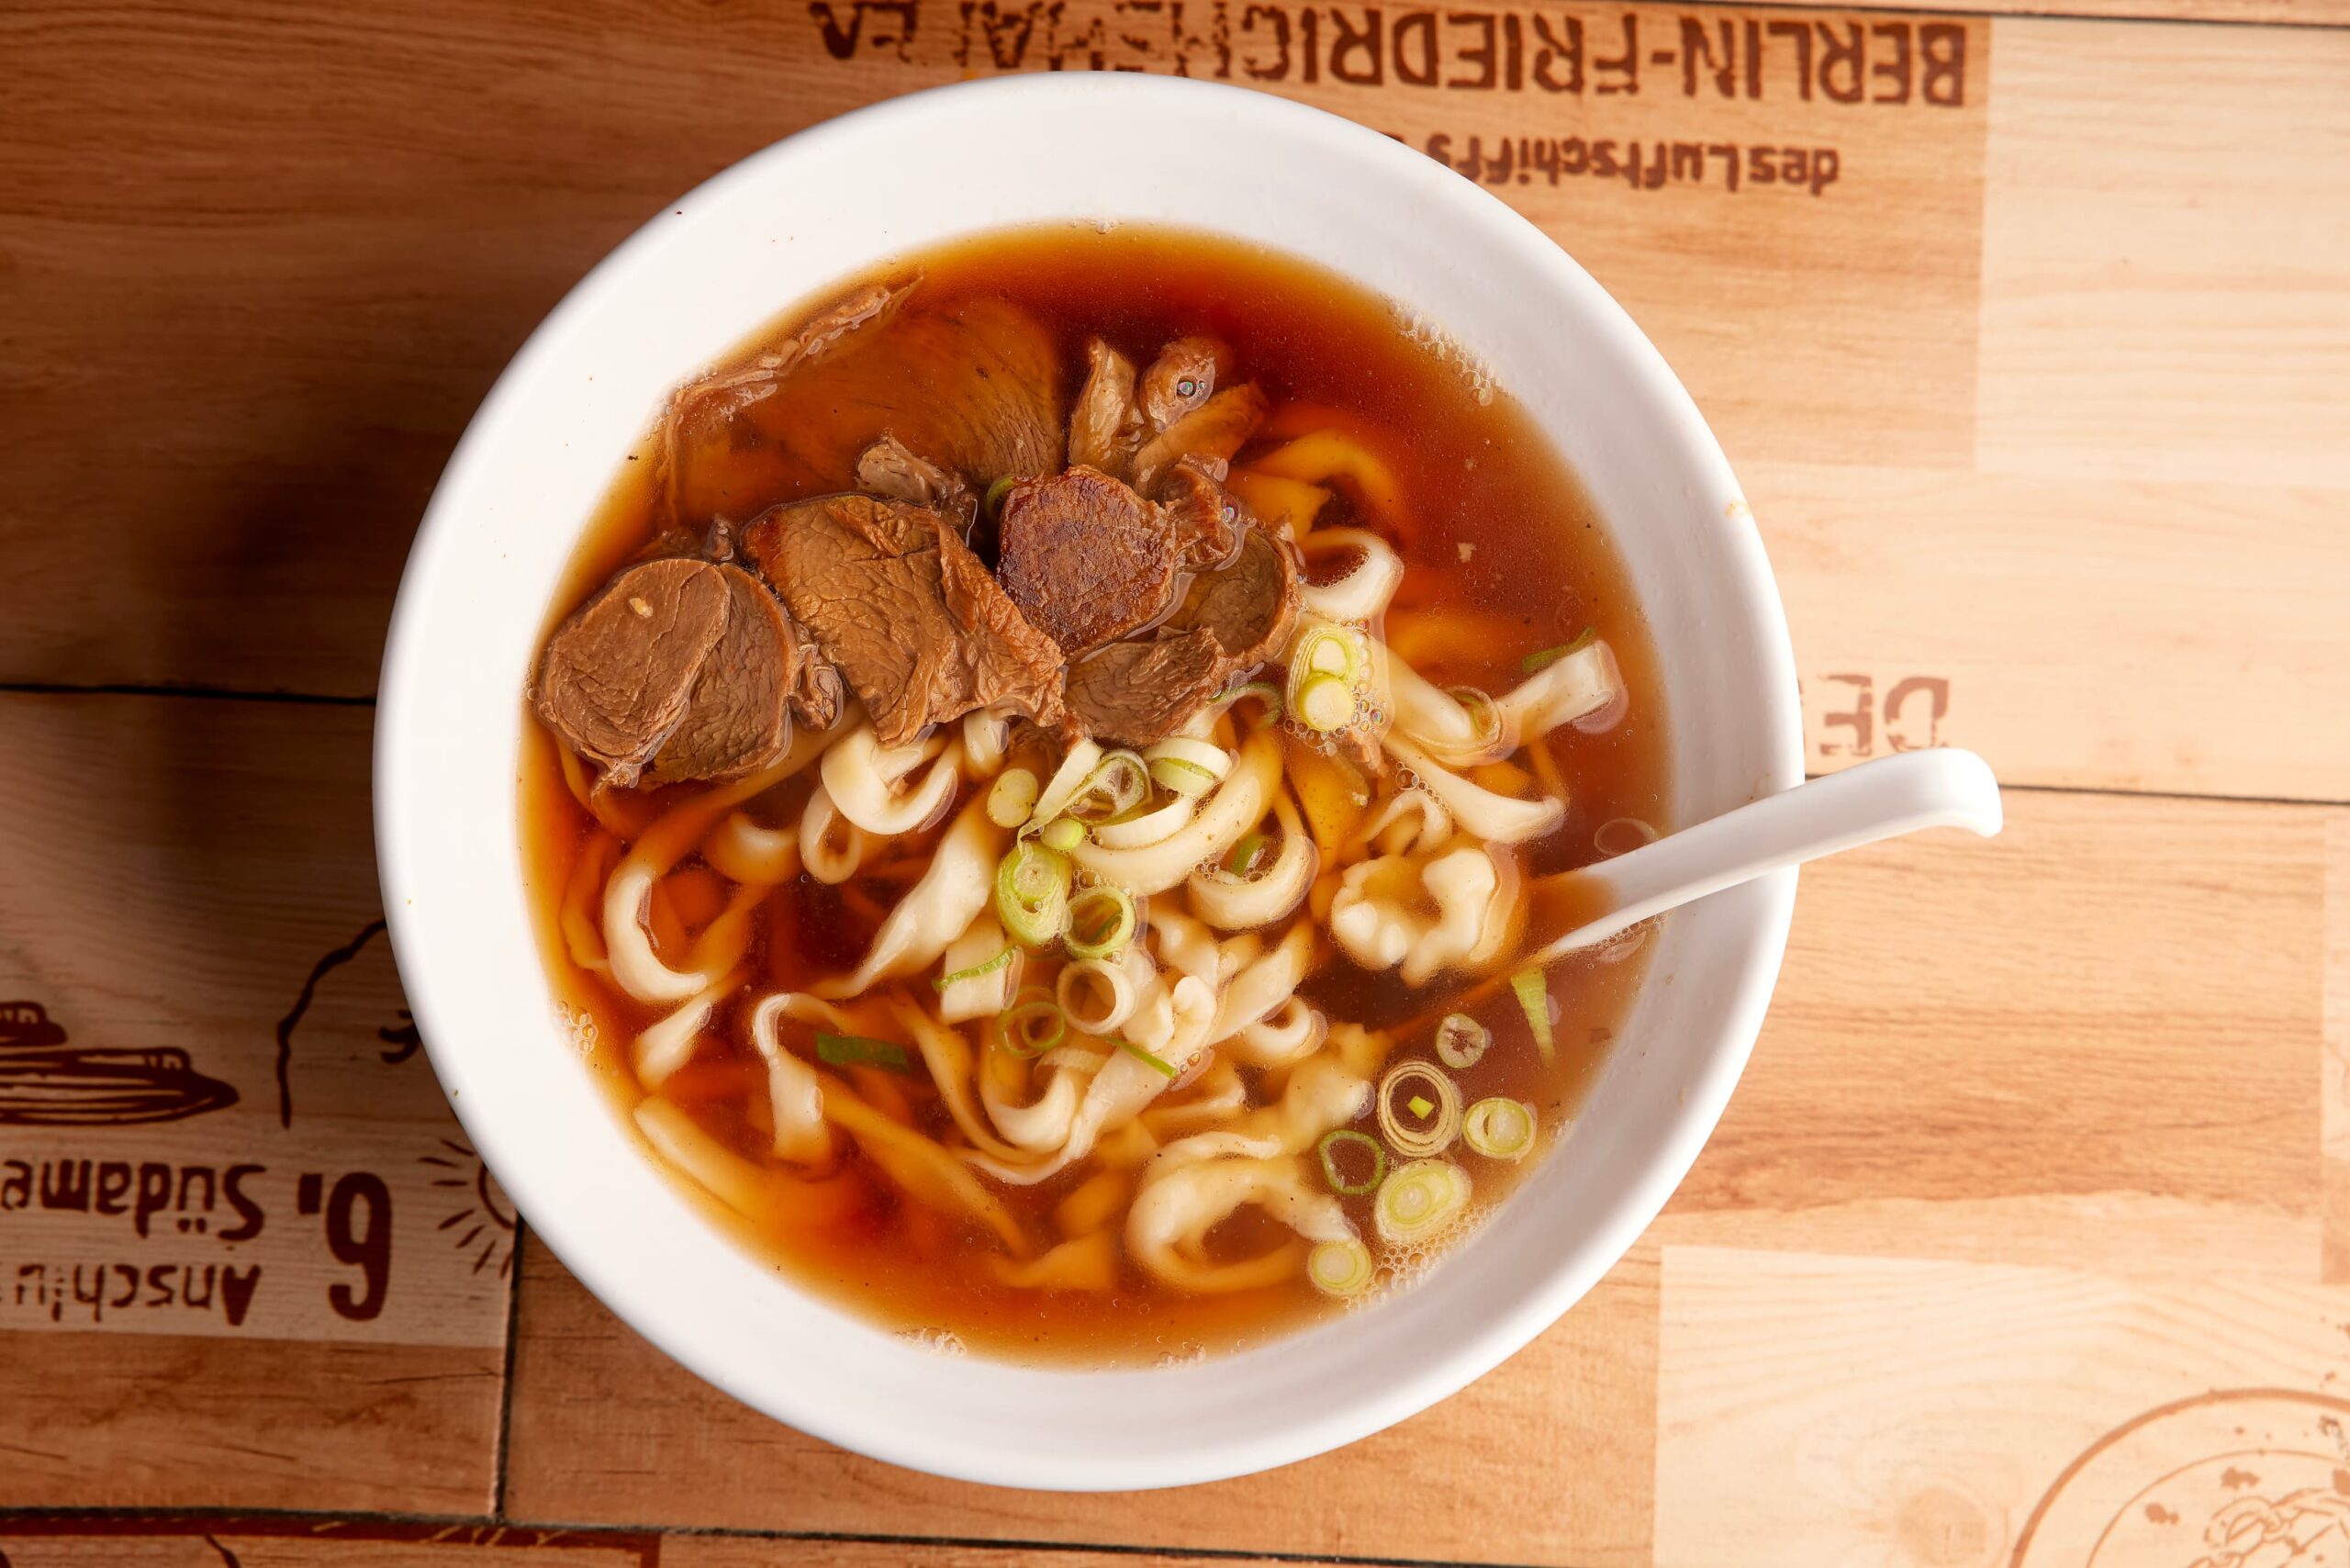 Golden Dumplings 2021.06.25 103A8071 1 scaled - Beef Noodle Soup